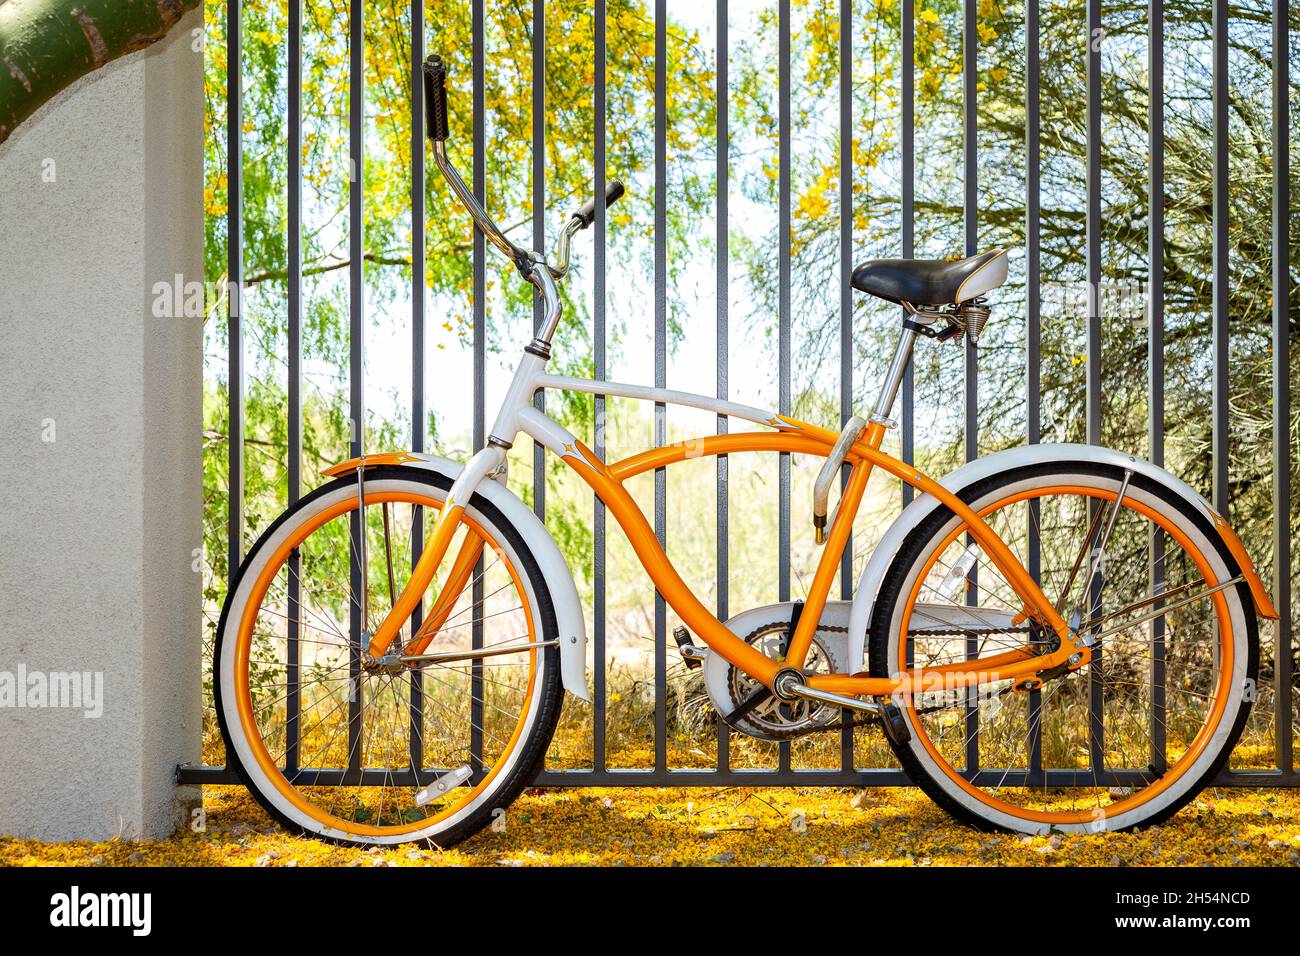 Altes orangefarbenes und weißes Fahrrad, das unter dem palo verde Baum in voller Blüte mit gelben Blumen auf dem Boden eingezäunt wurde. Retro-Style-Fahrrad in der Wüste von Arizona. Stockfoto